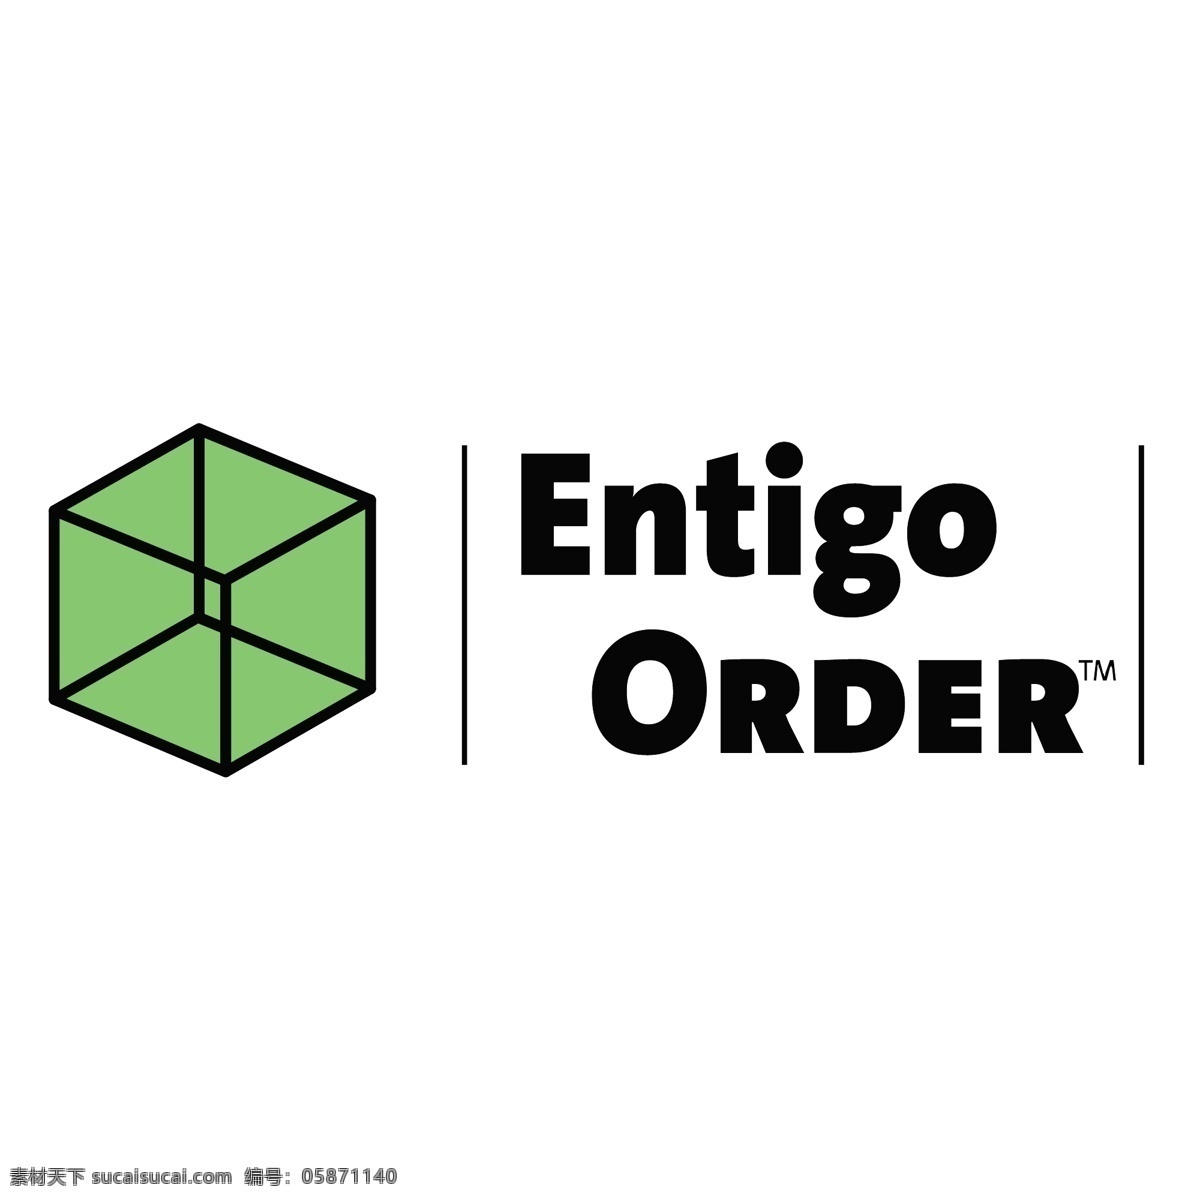 entigo 秩序 订单 订单的向量 向量的秩序 自由 载体 矢量 秩序的设计 为了自由 为了画面 从而为载体 矢量图 建筑家居